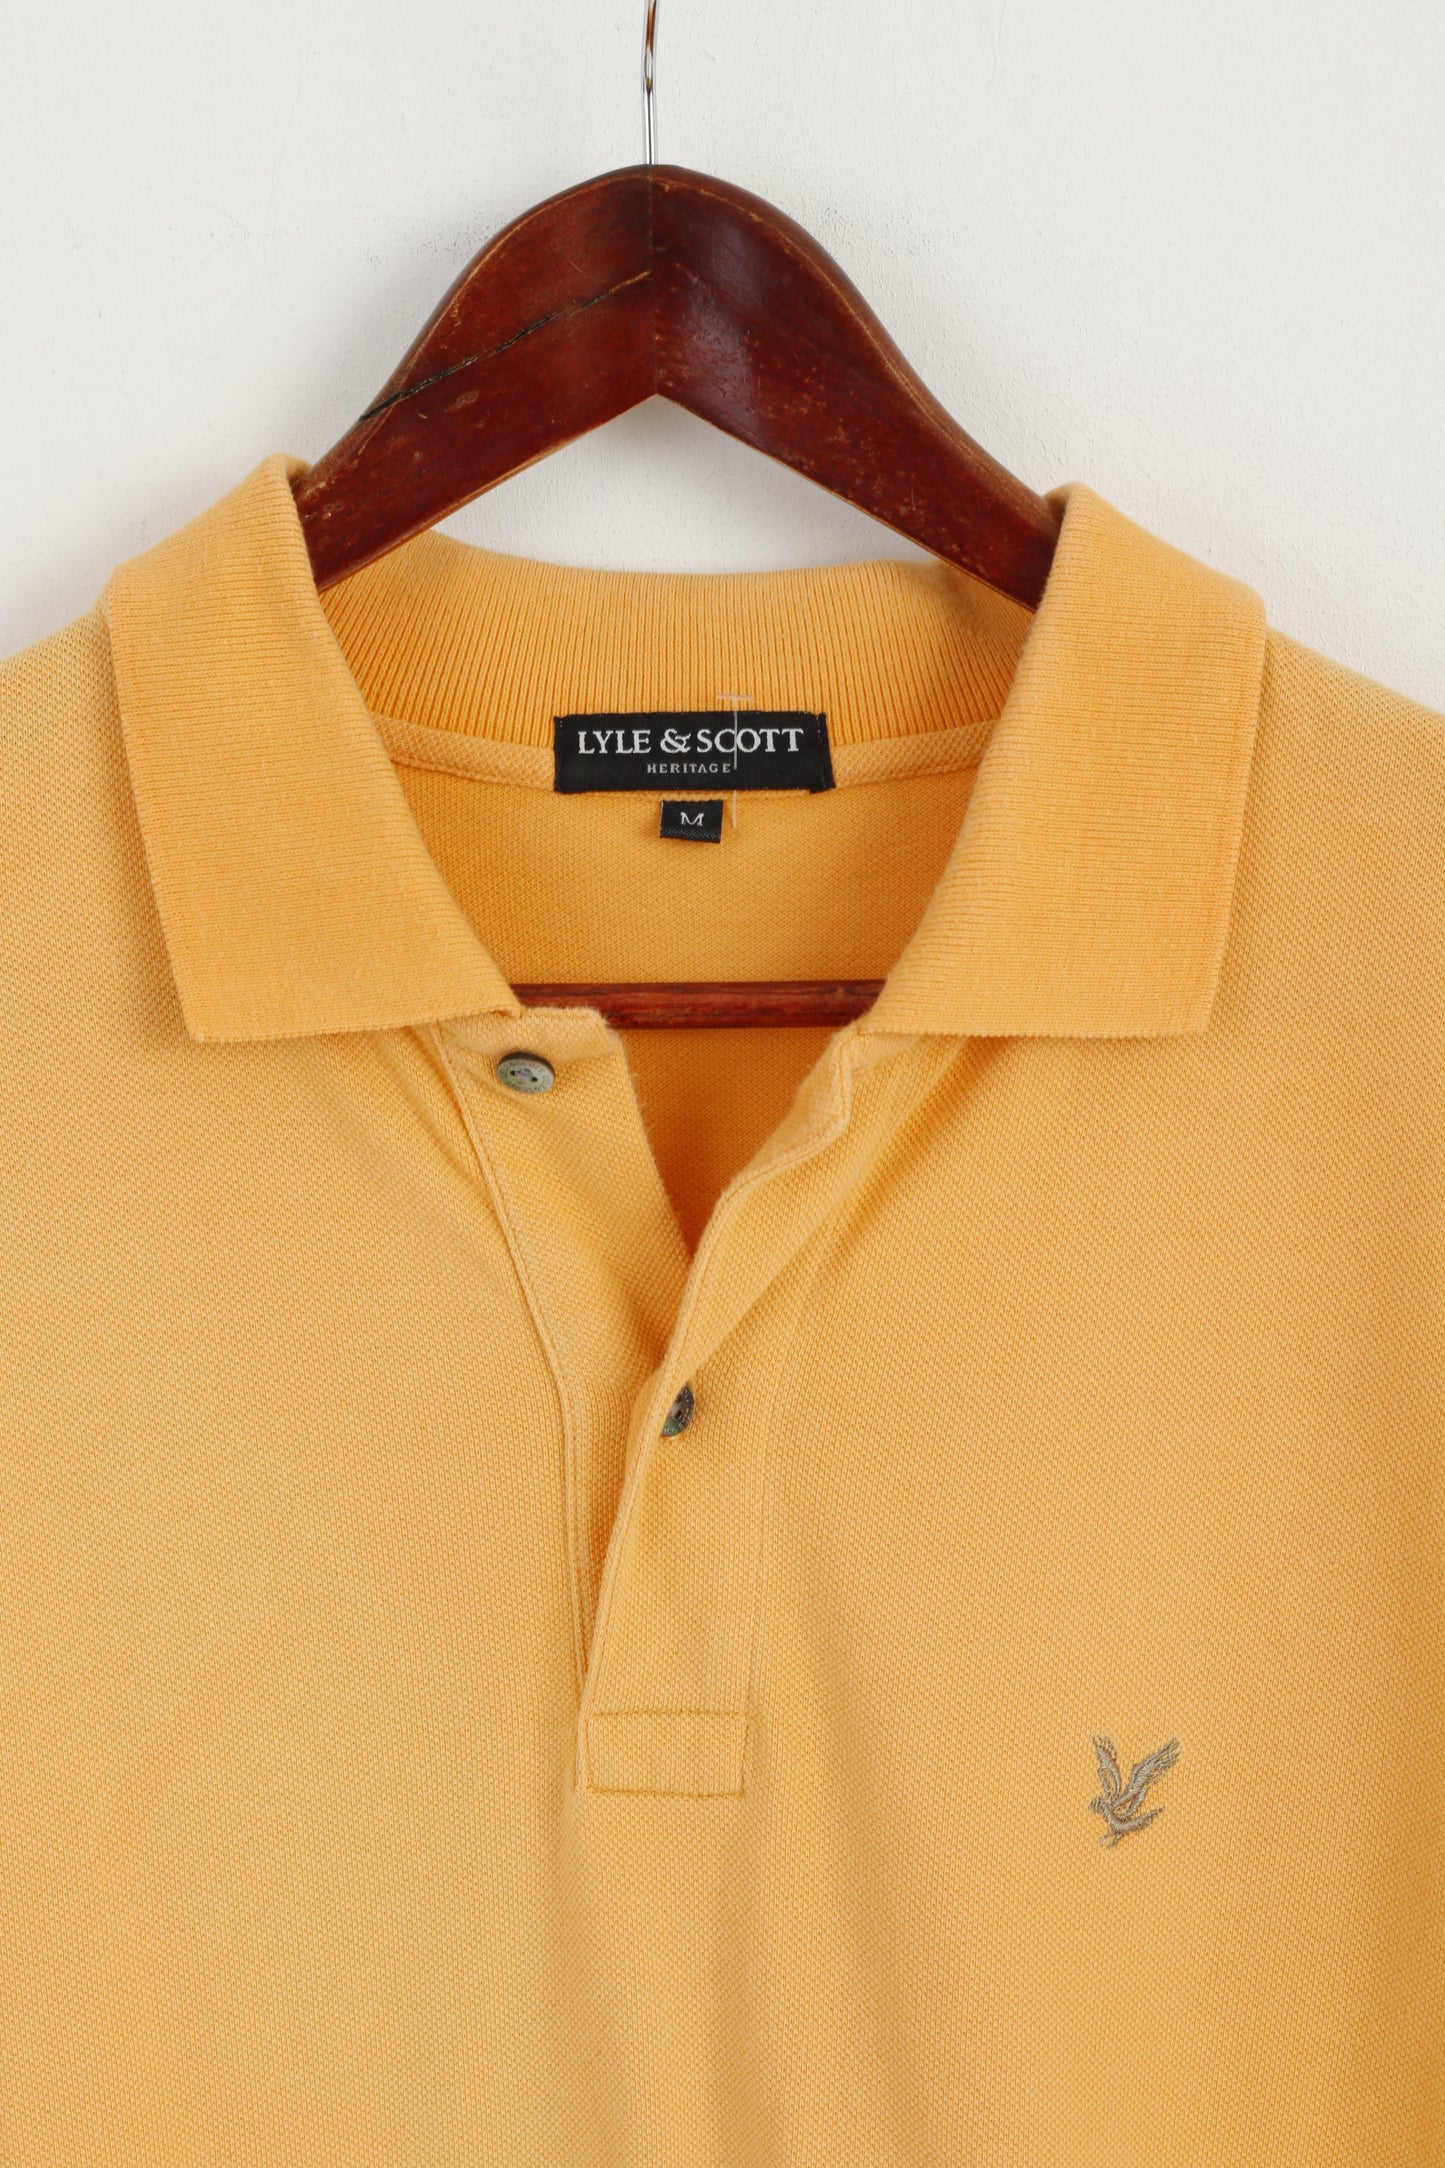 Lyle & Scott Men M Polo Shirt Orange Cotton Heritage Short Sleeve Plain Top